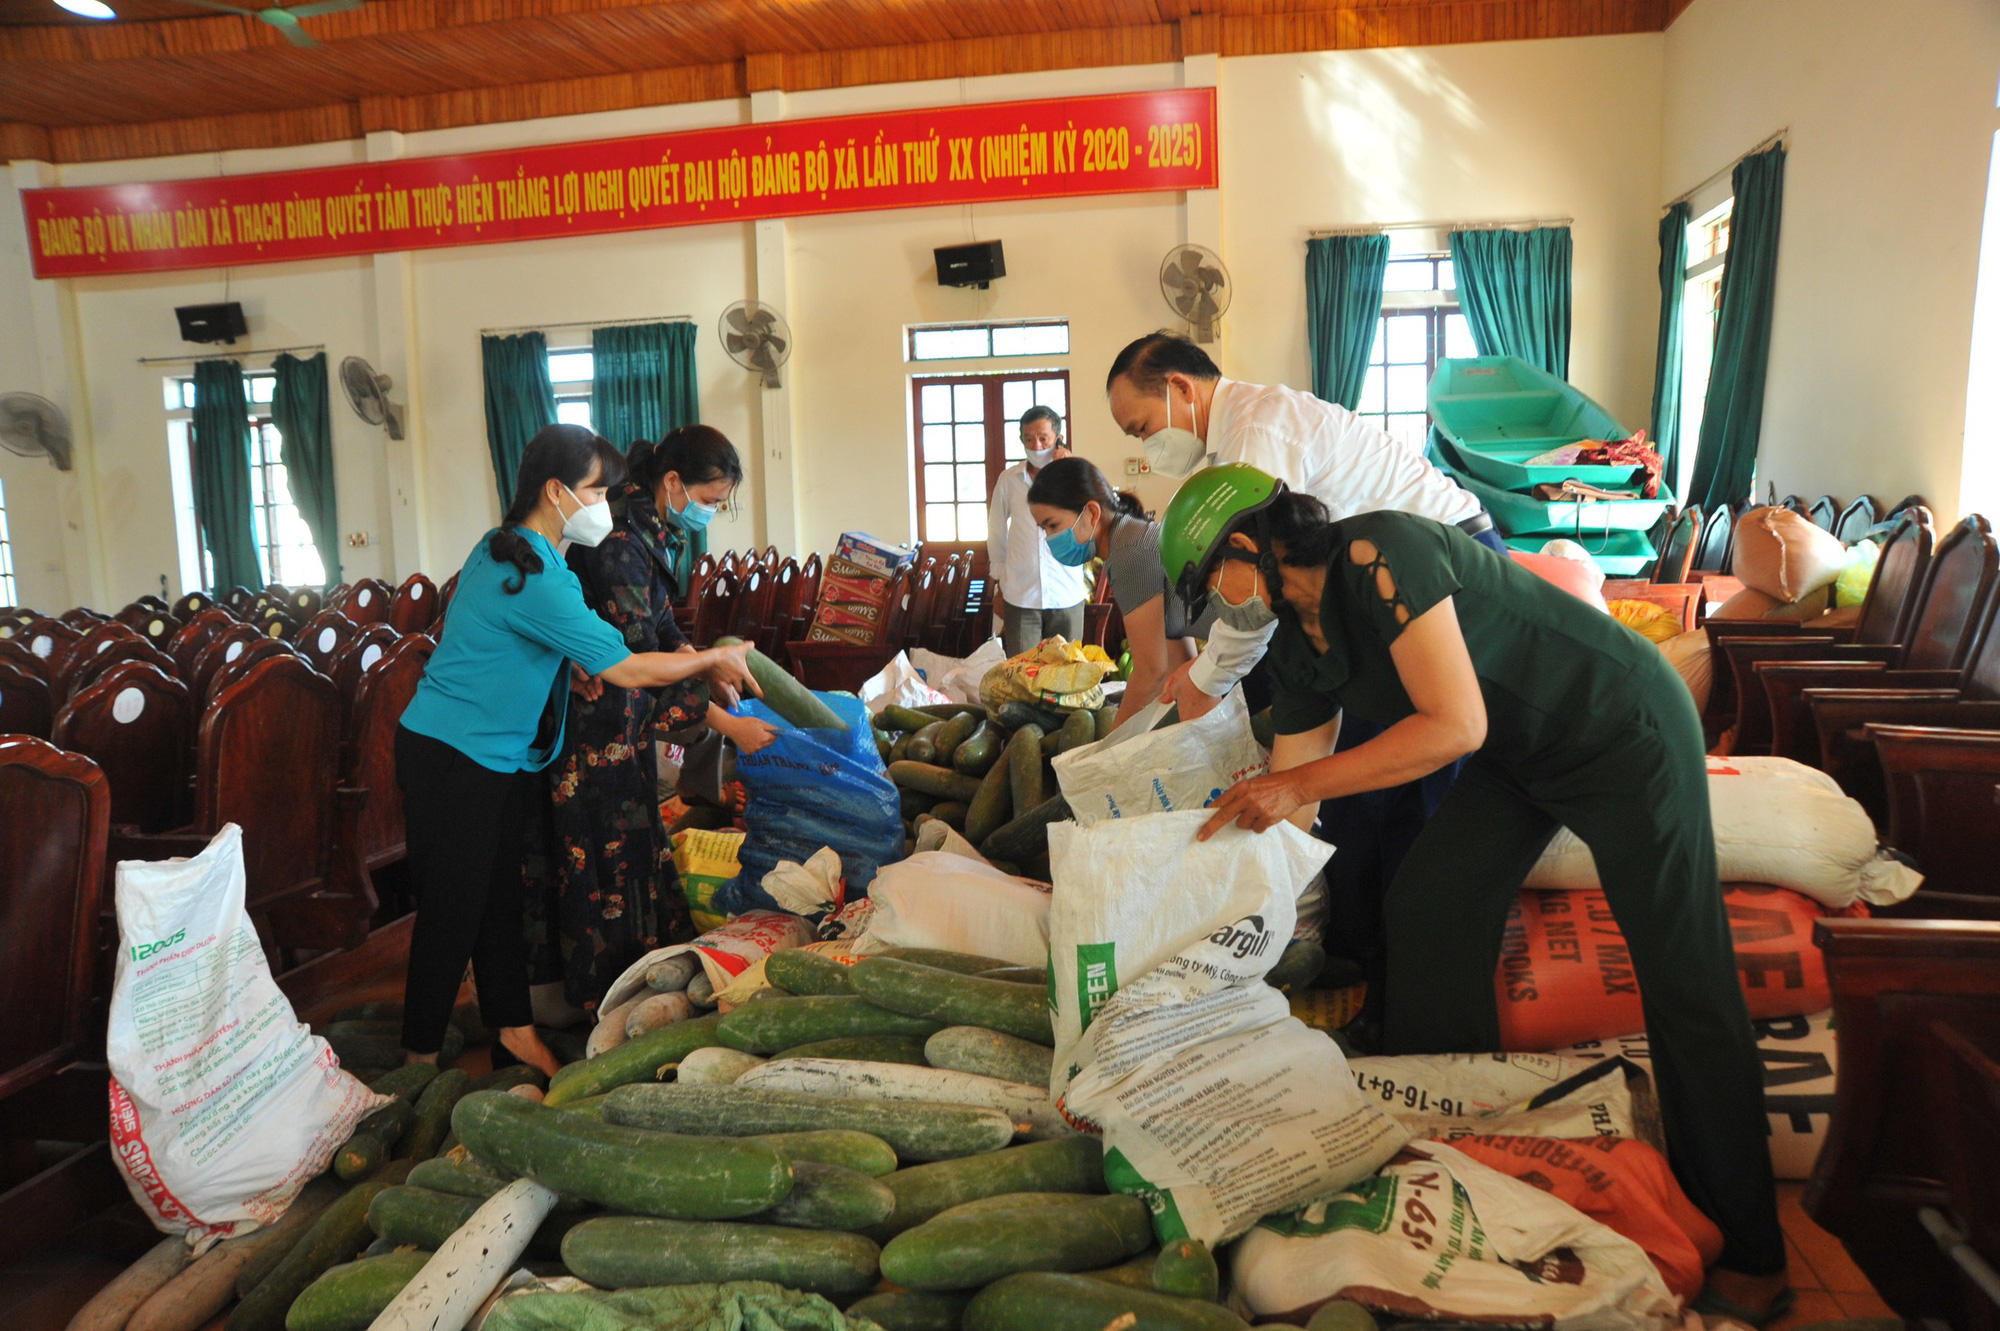 Nông dân Hà Tĩnh gom gạo ngon, làm khô cá đặc sản gửi người dân TP.HCM - Ảnh 4.